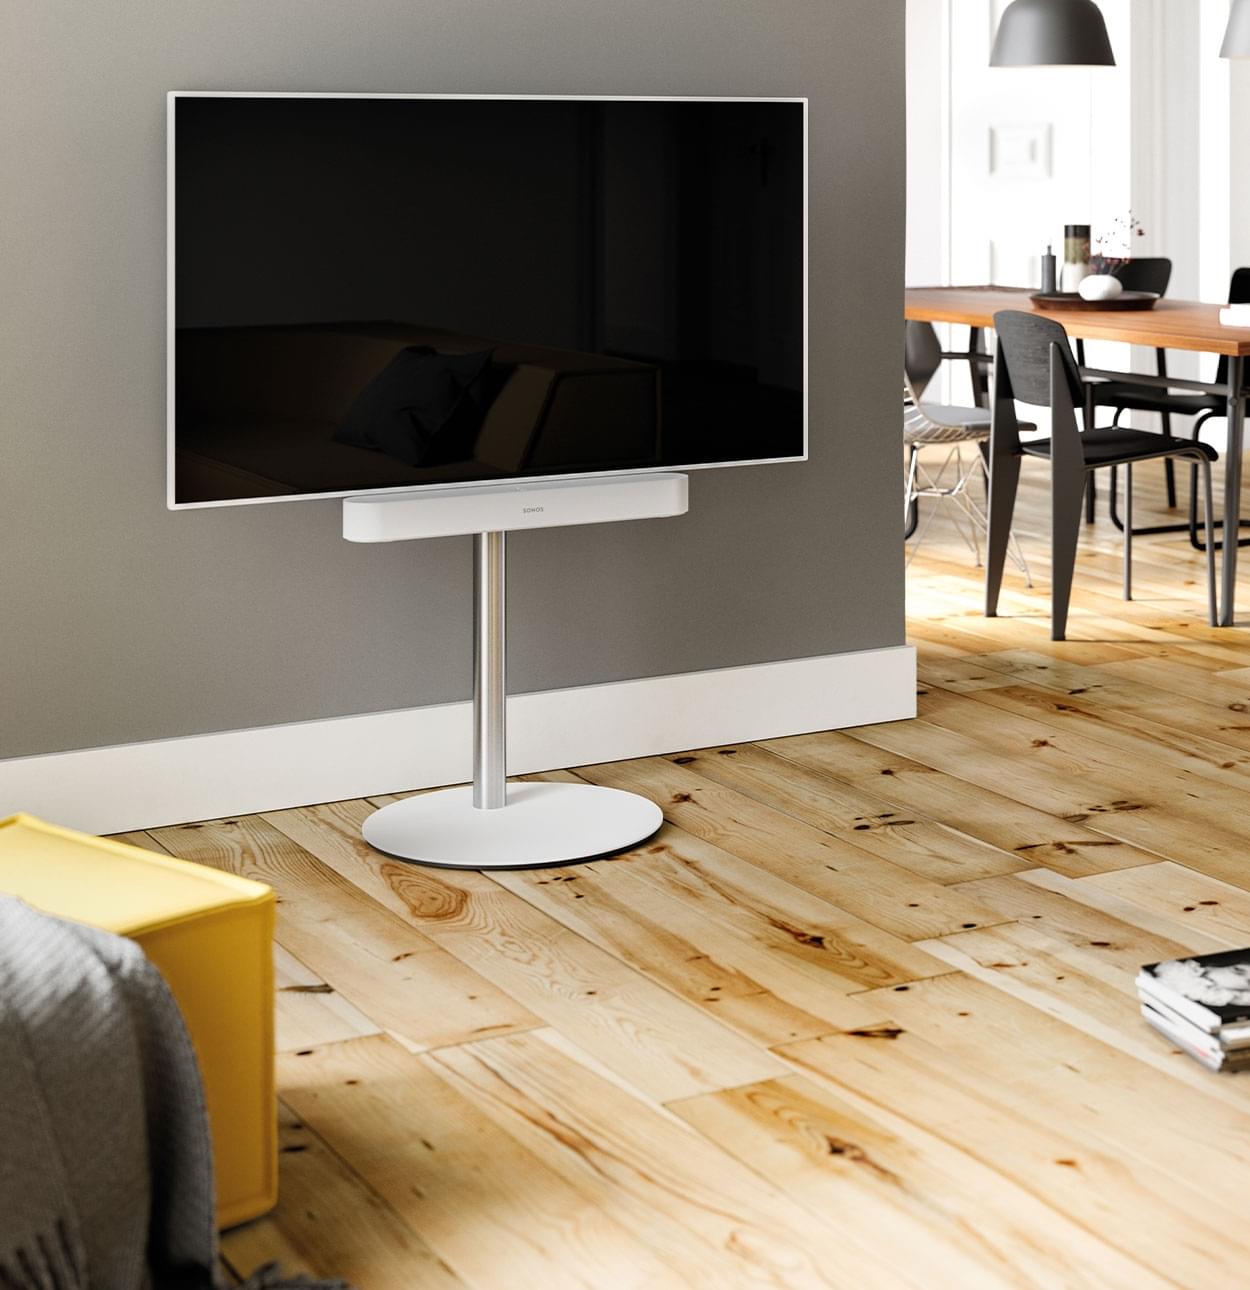 Trække på at tiltrække svært Spectral smart furniture for families, sound fanatics and modern living. -  Spectral Audio Möbel GmbH